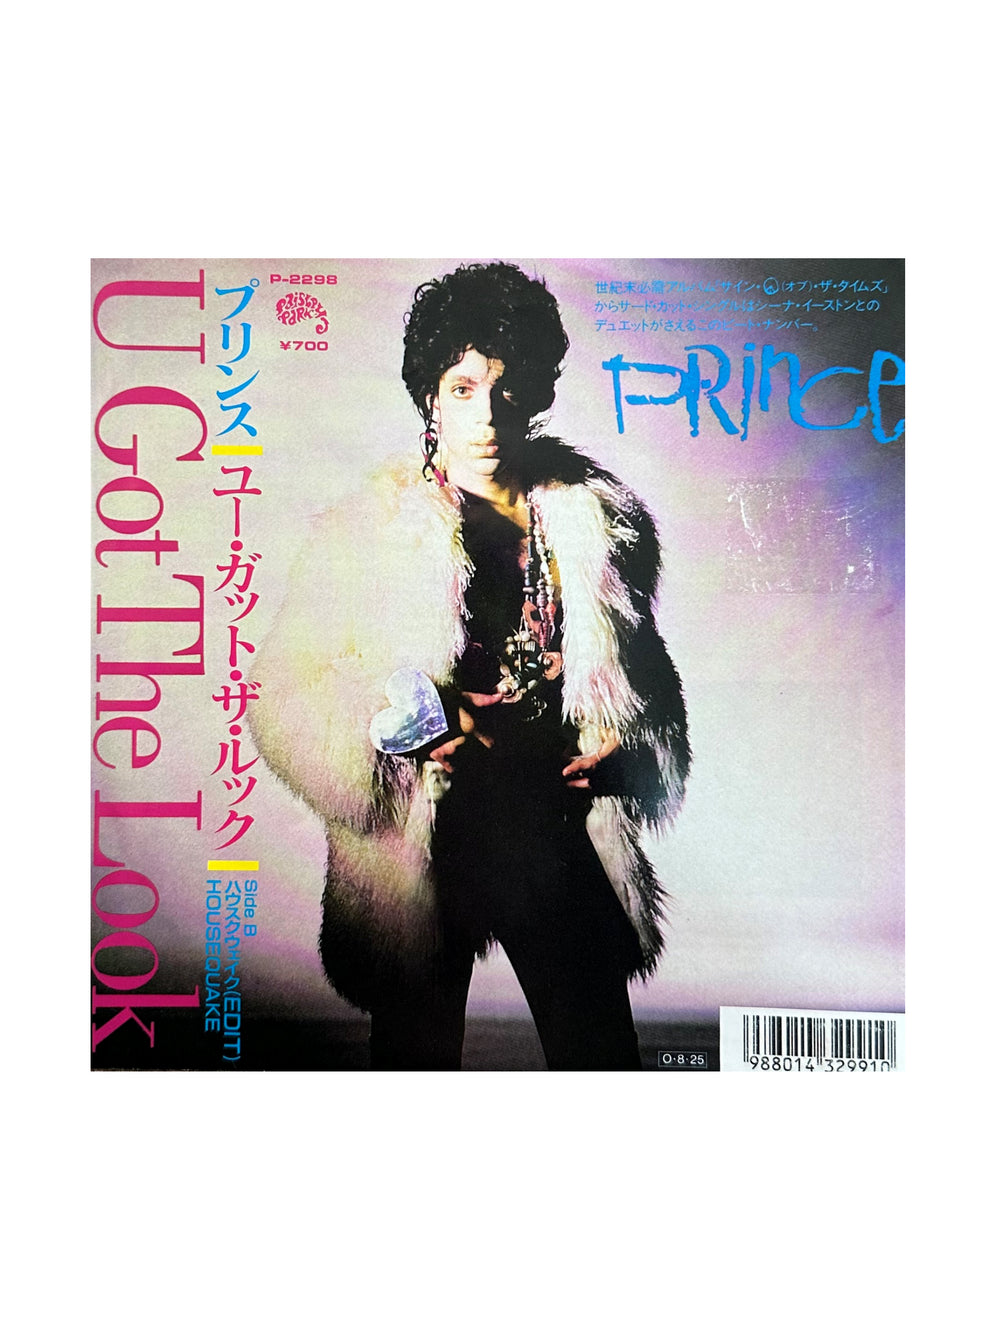 Prince – U Got The Look Vinyl 7" Single Japan Preloved: 1987